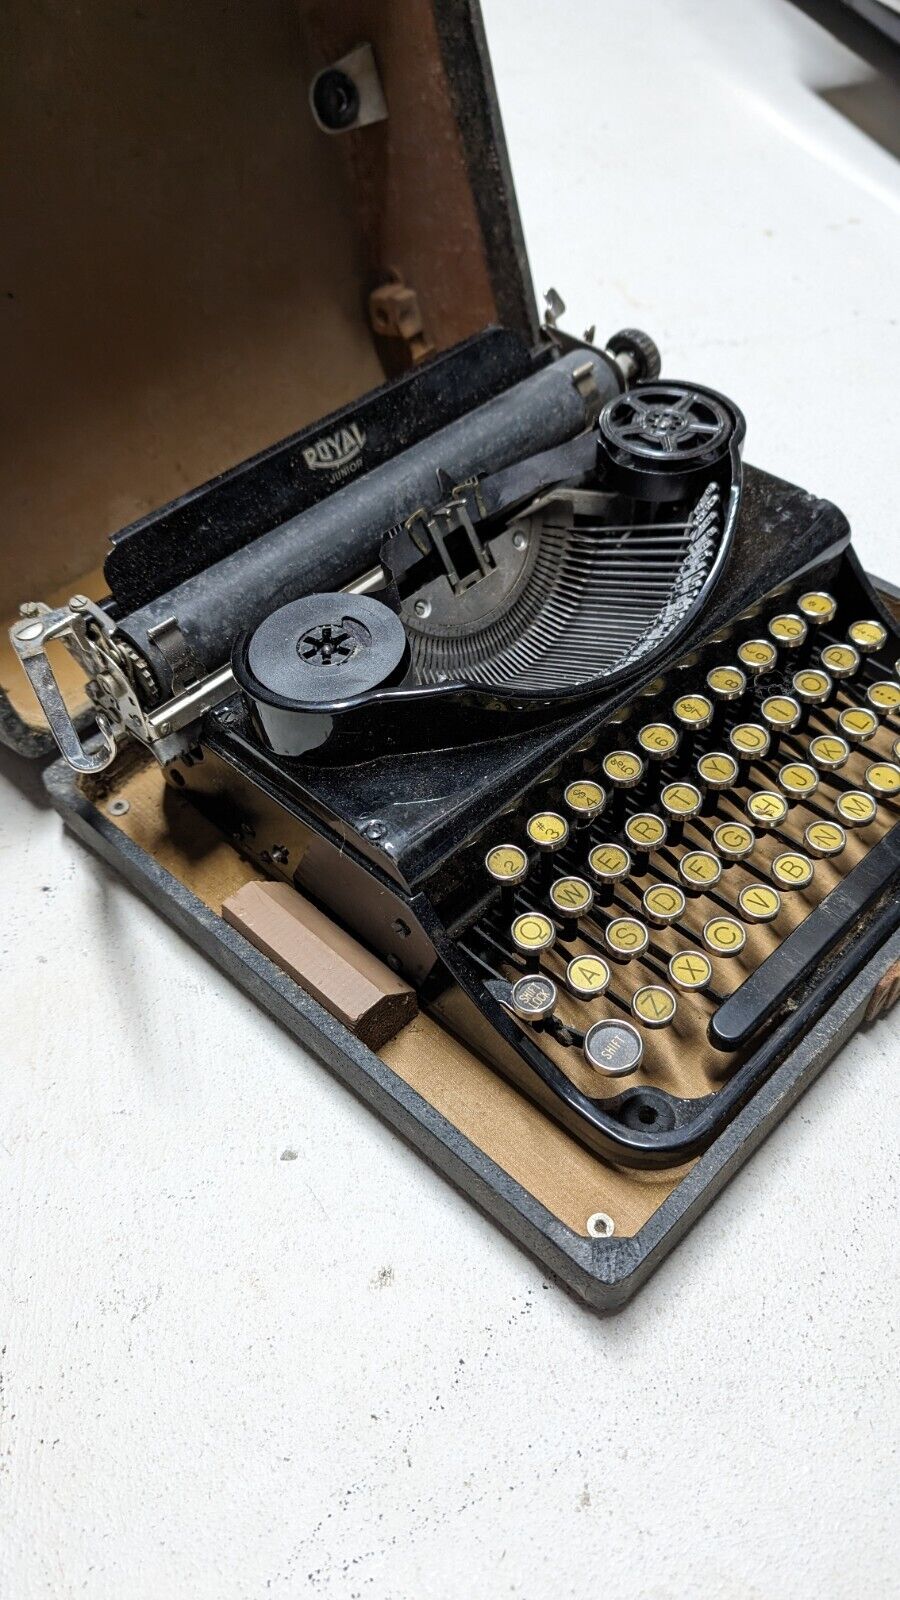 Antique Royal Junior Portable Manual Typewriter w/Case